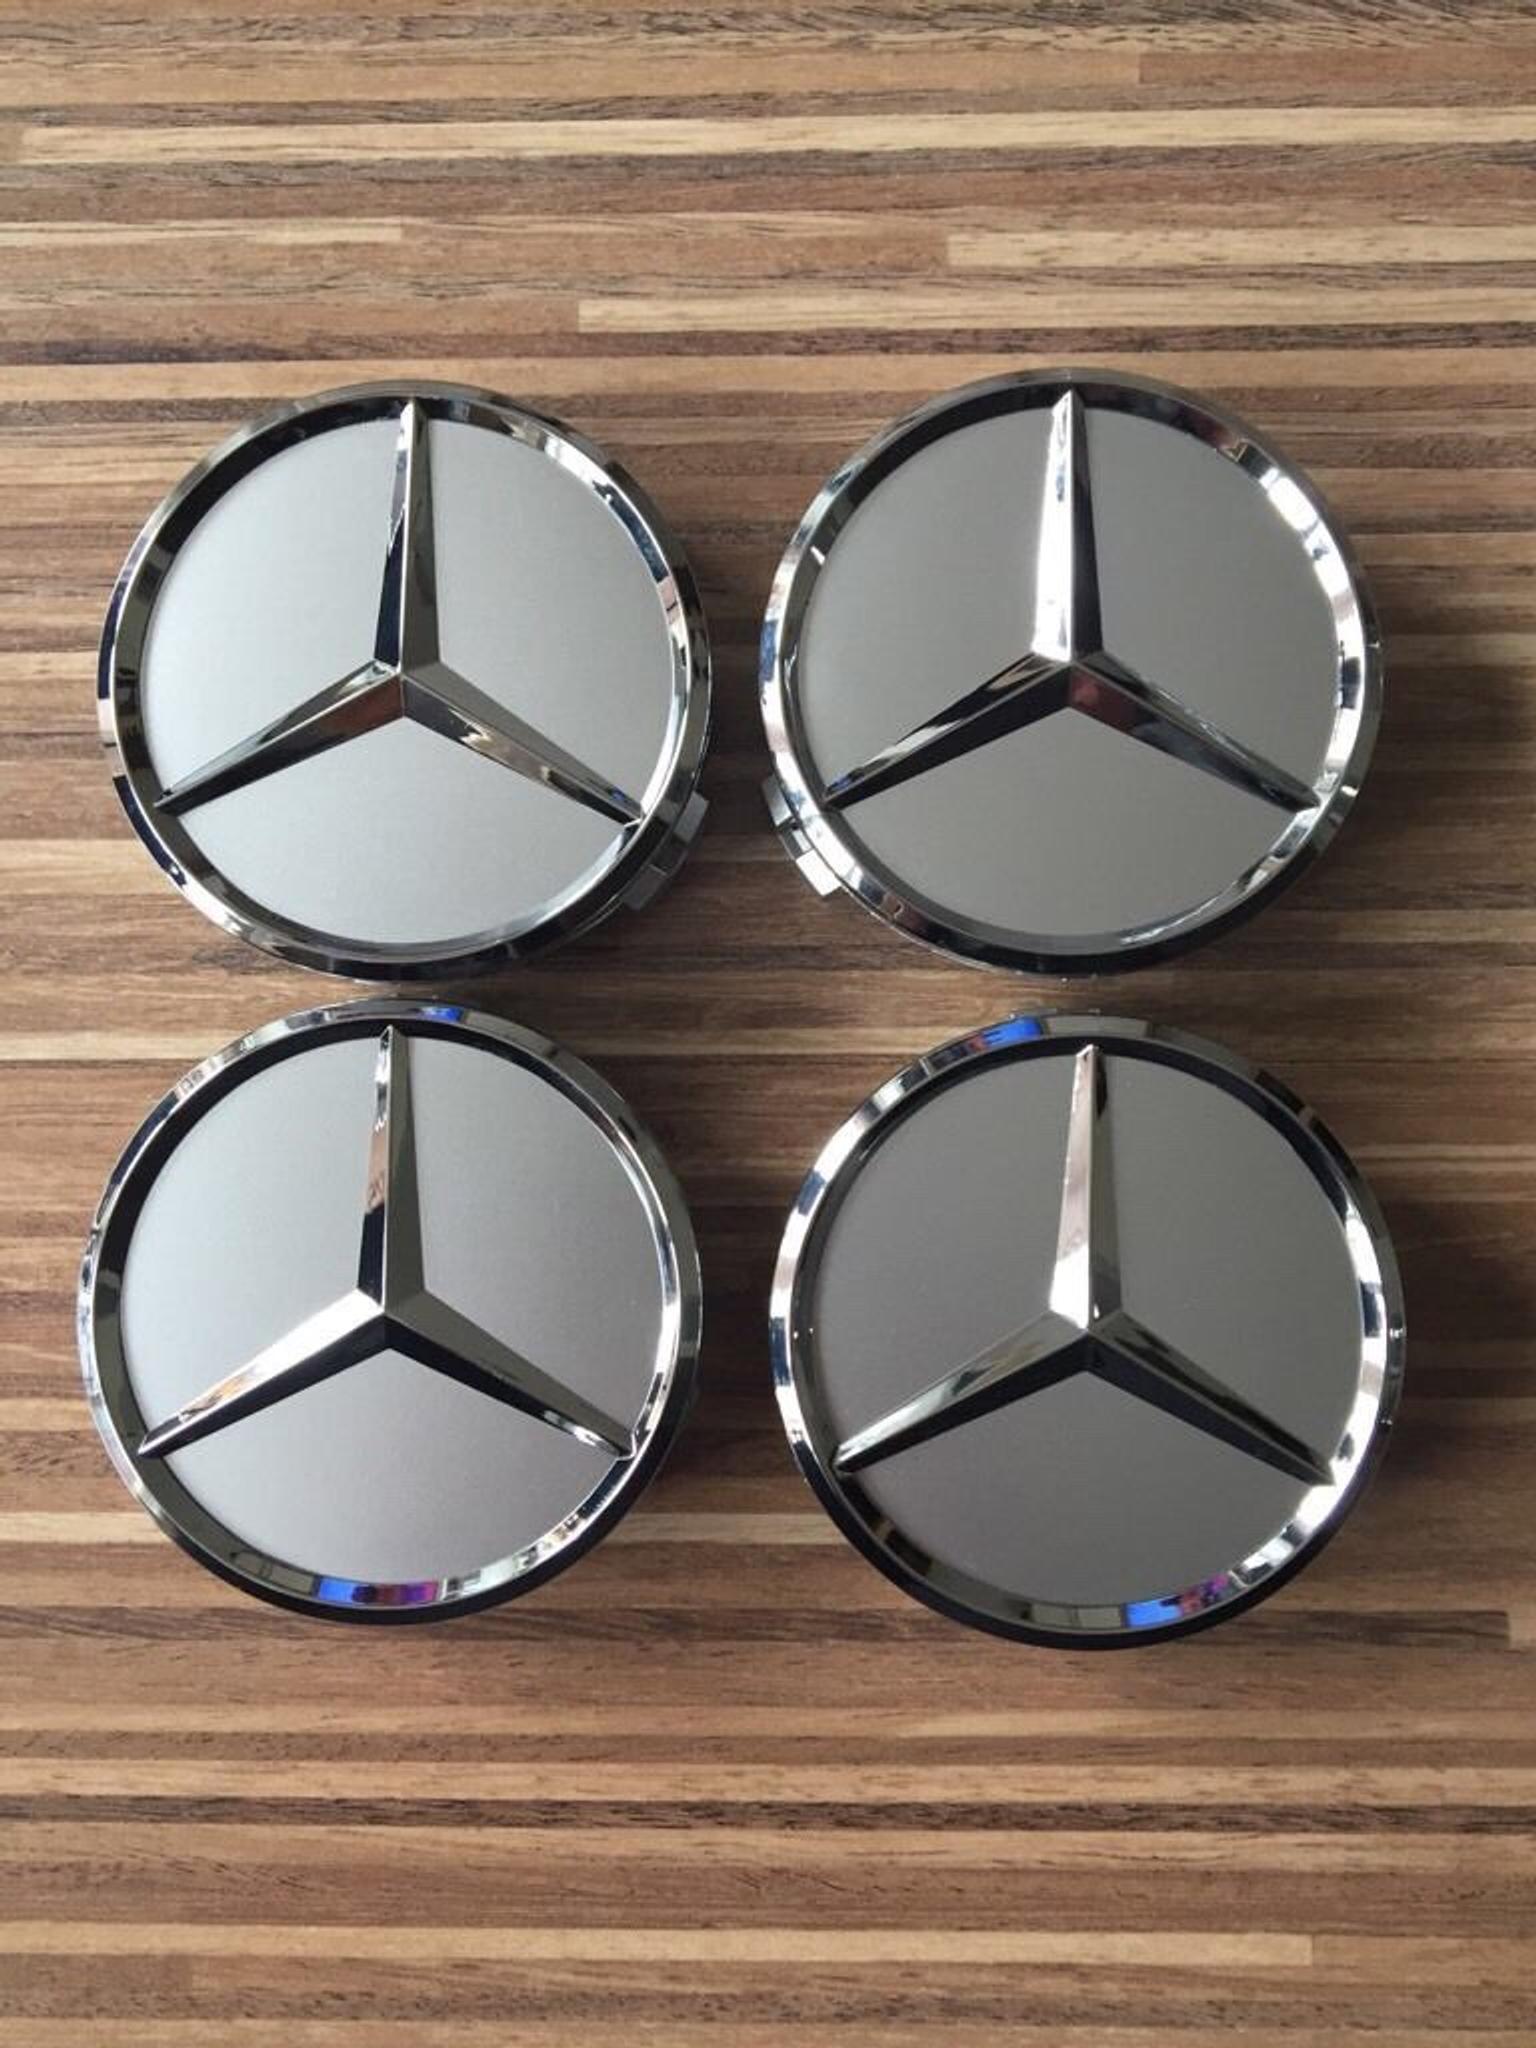 2 Myhonour 4X Felgendeckel Nabenkappen mit Mercedes Benz Logo